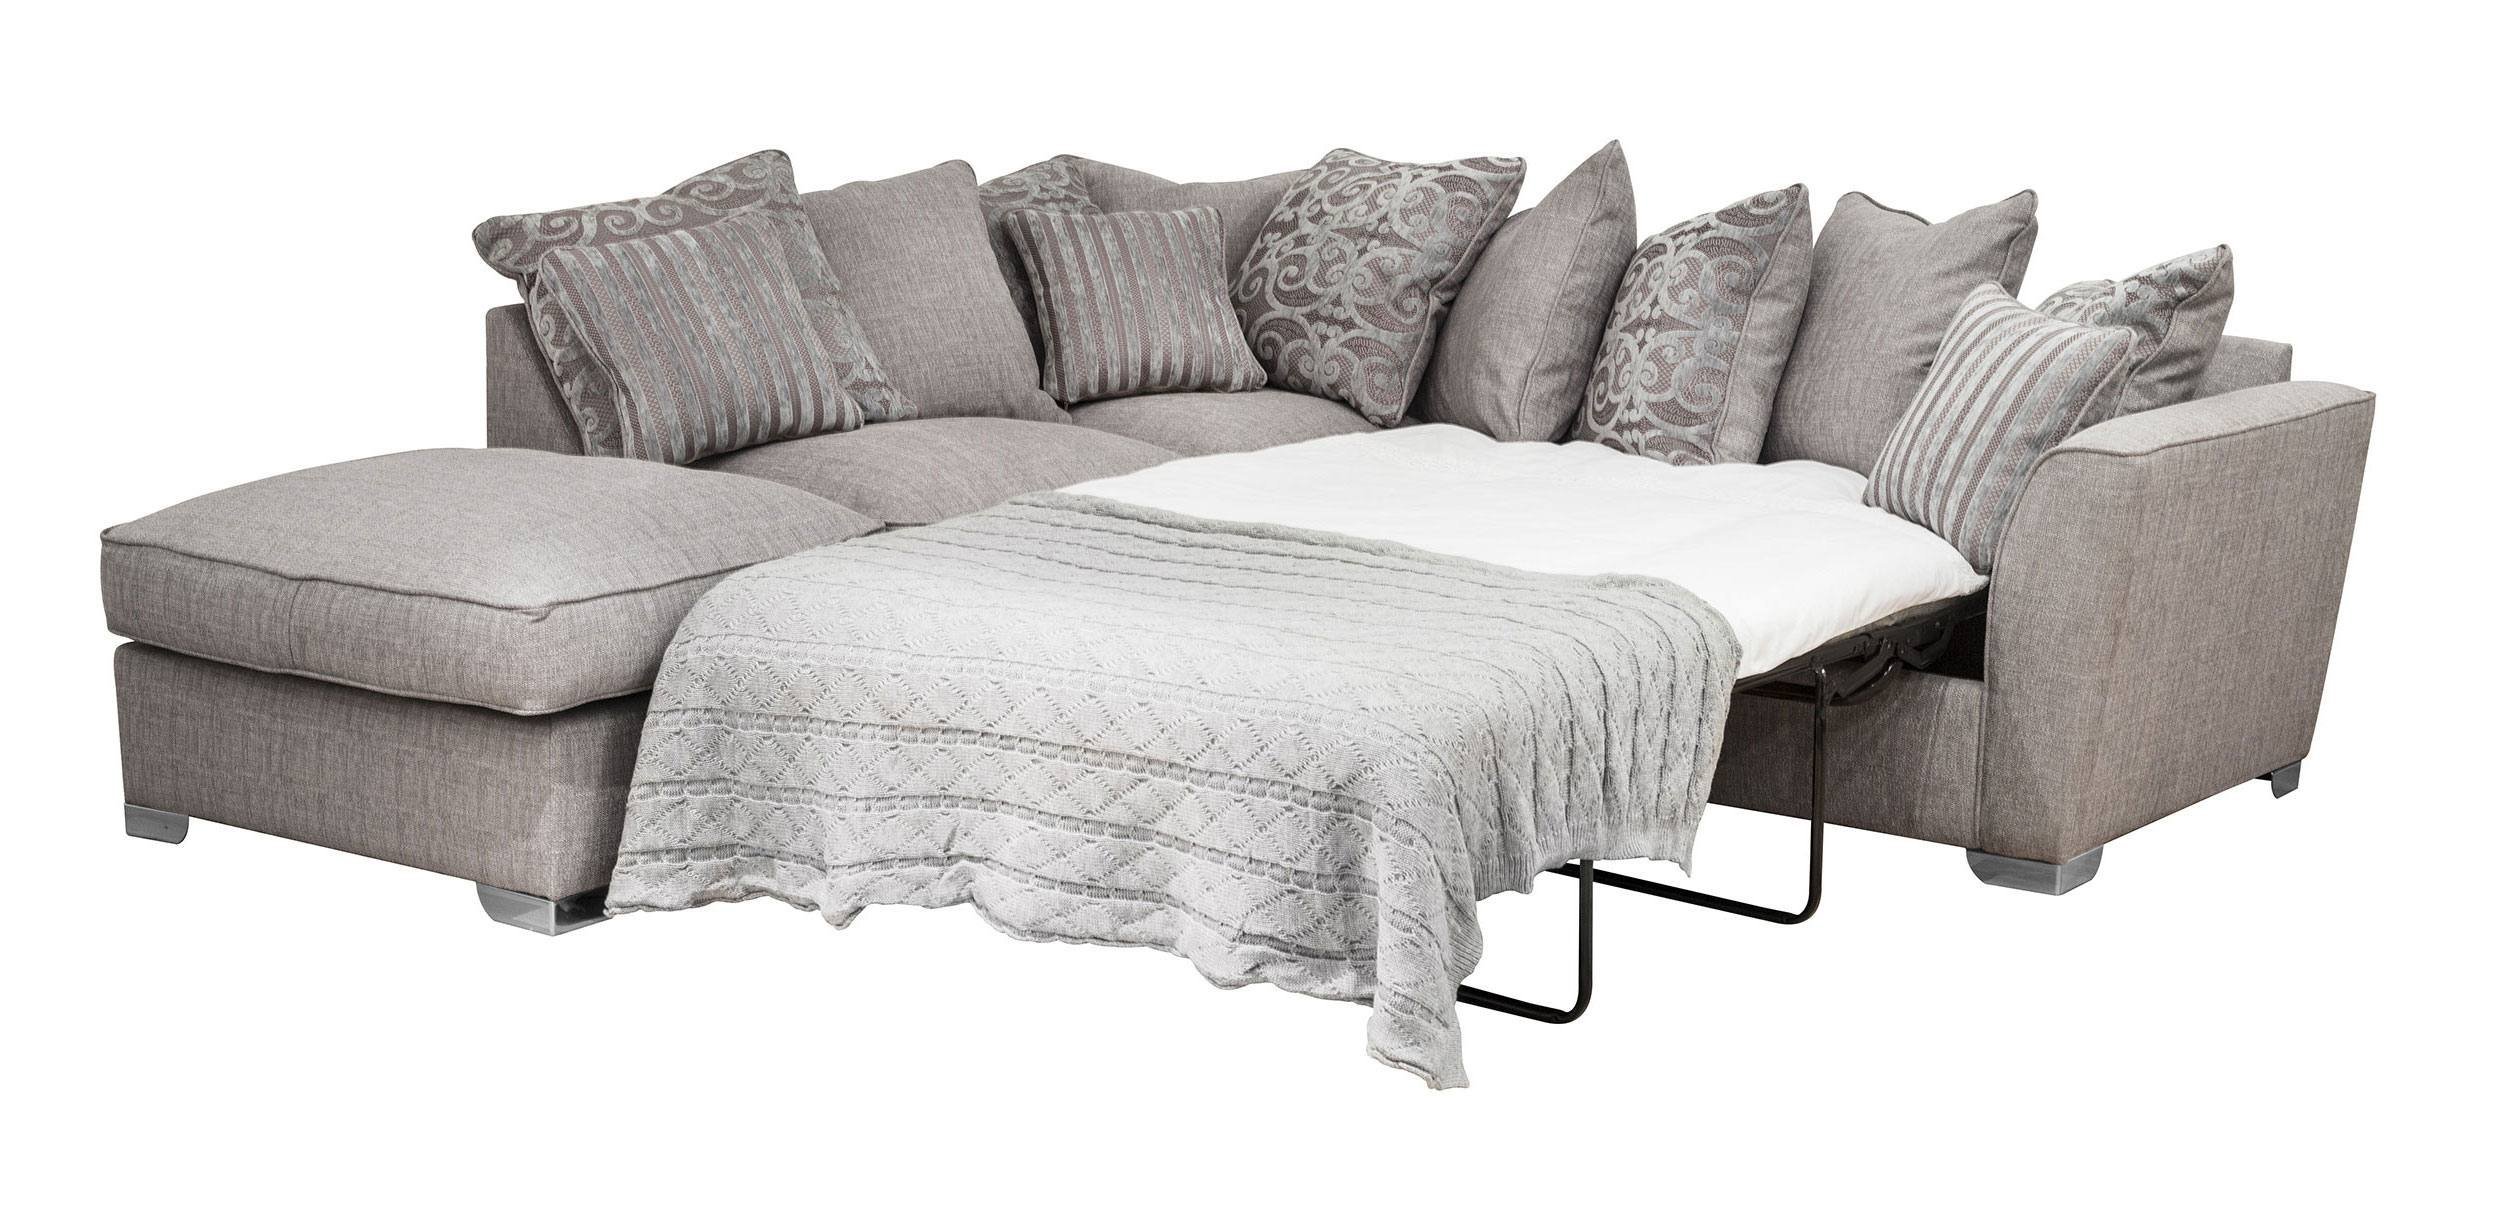 ultimate sofa bed uk